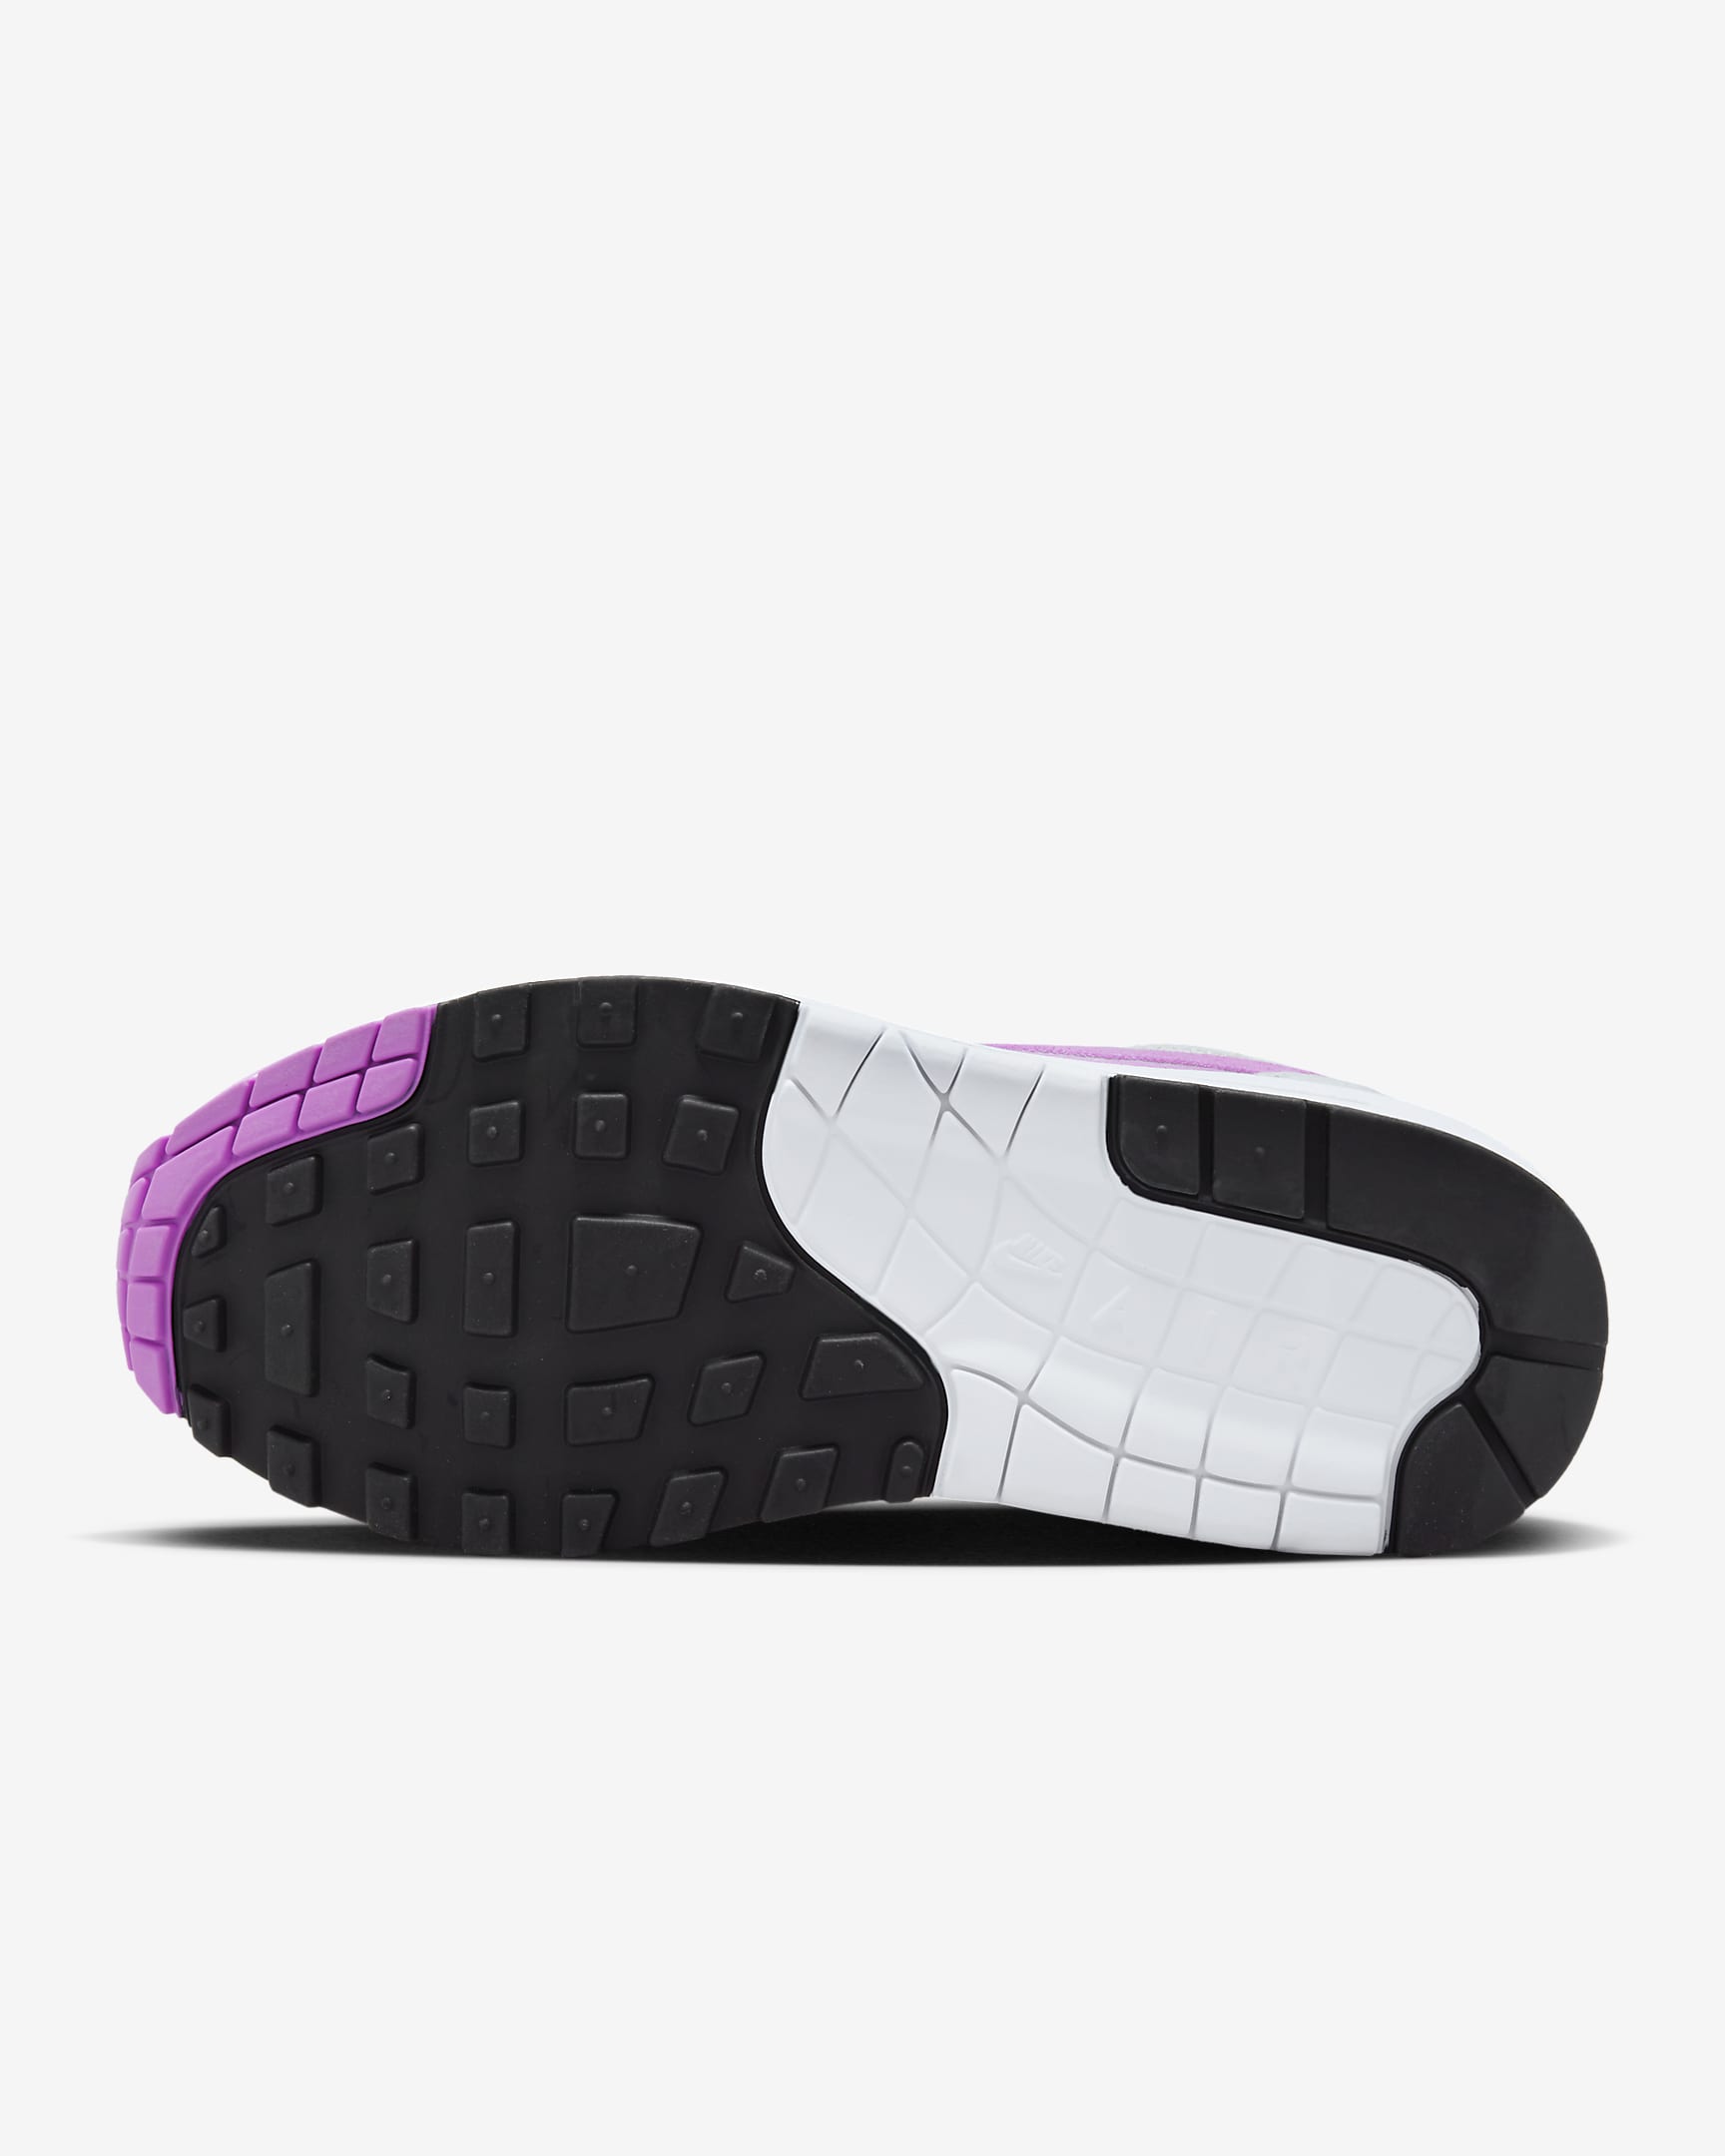 Nike Air Max 1 Women's Shoes - Neutral Grey/White/Black/Fuchsia Dream